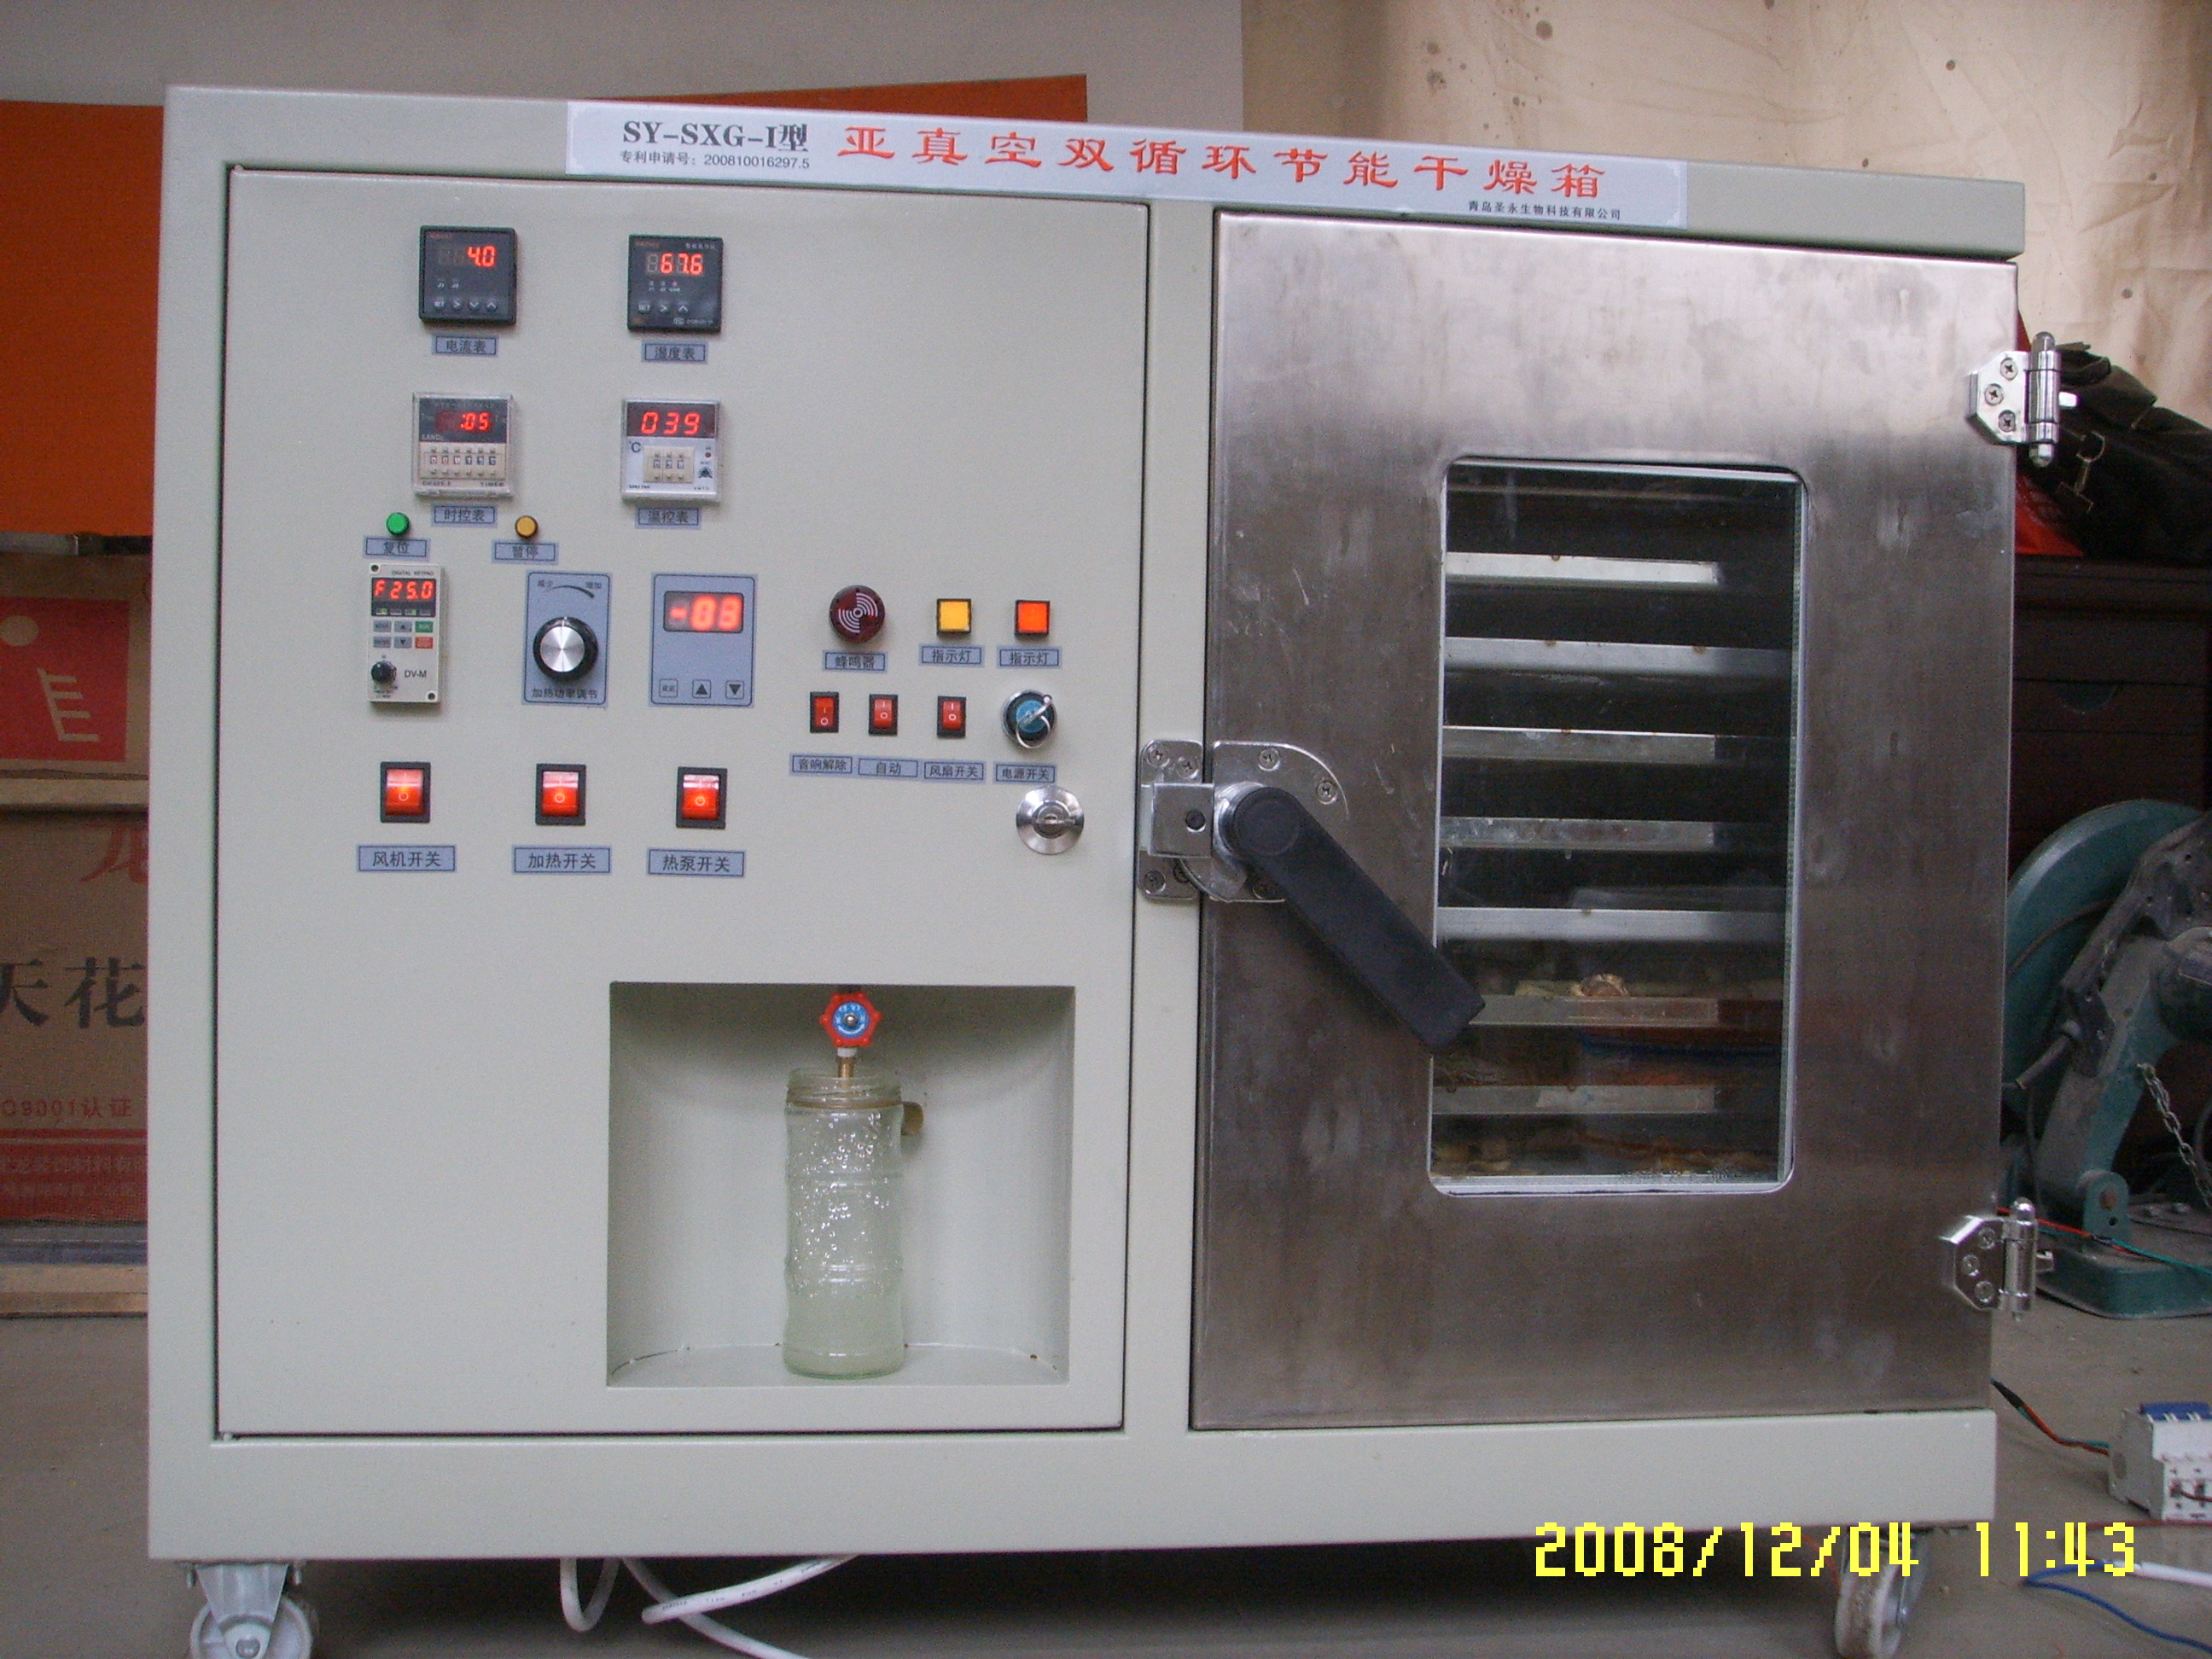 食品干燥箱 中常温干燥技术设备;芳香类植物细胞液提取; 青岛圣永生物科技有限公司